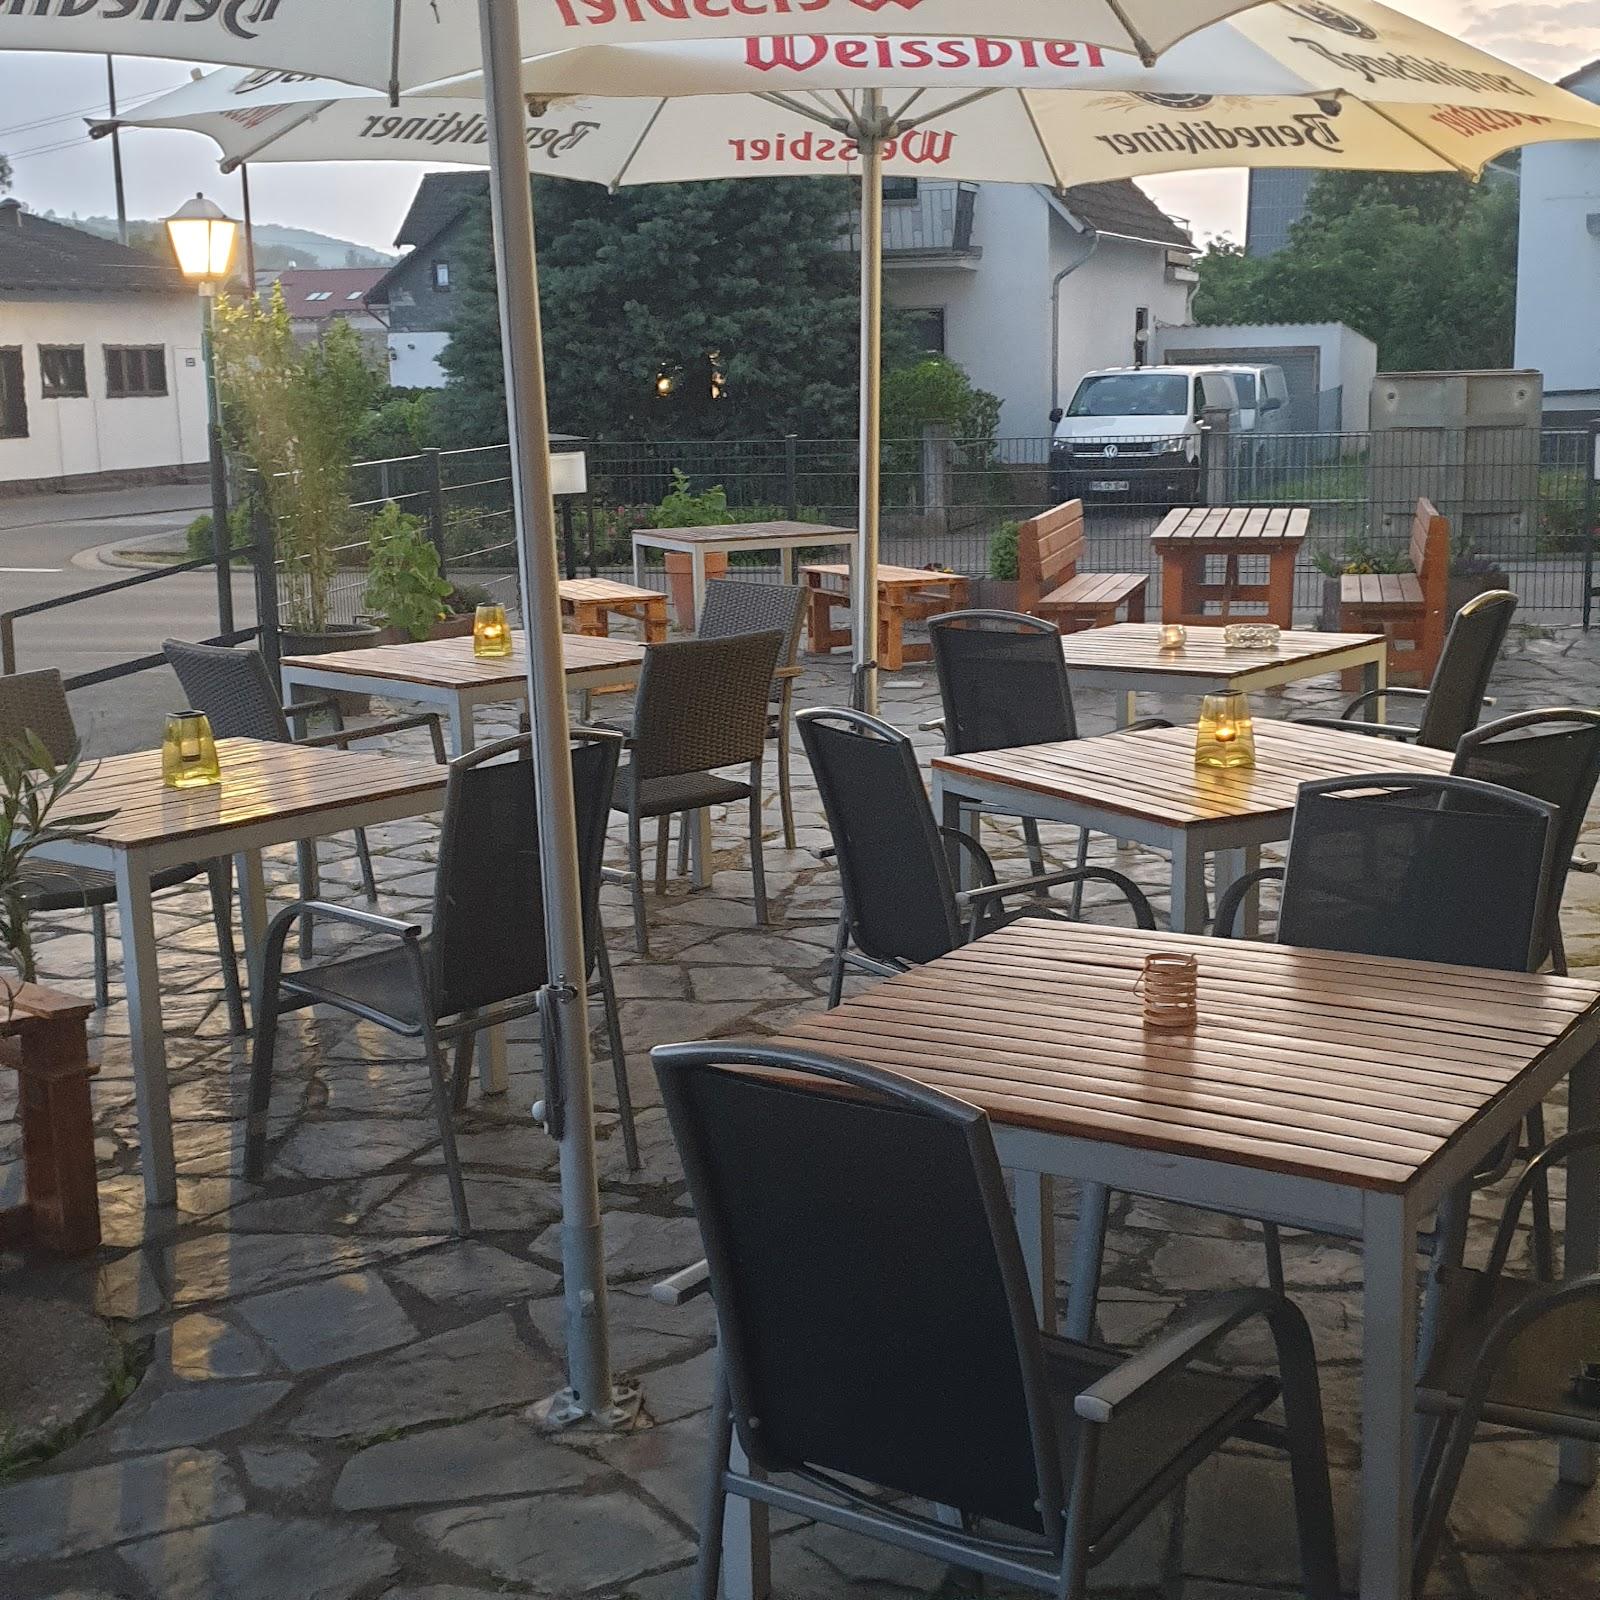 Restaurant "Zur Kloningersmühle" in Langenlonsheim